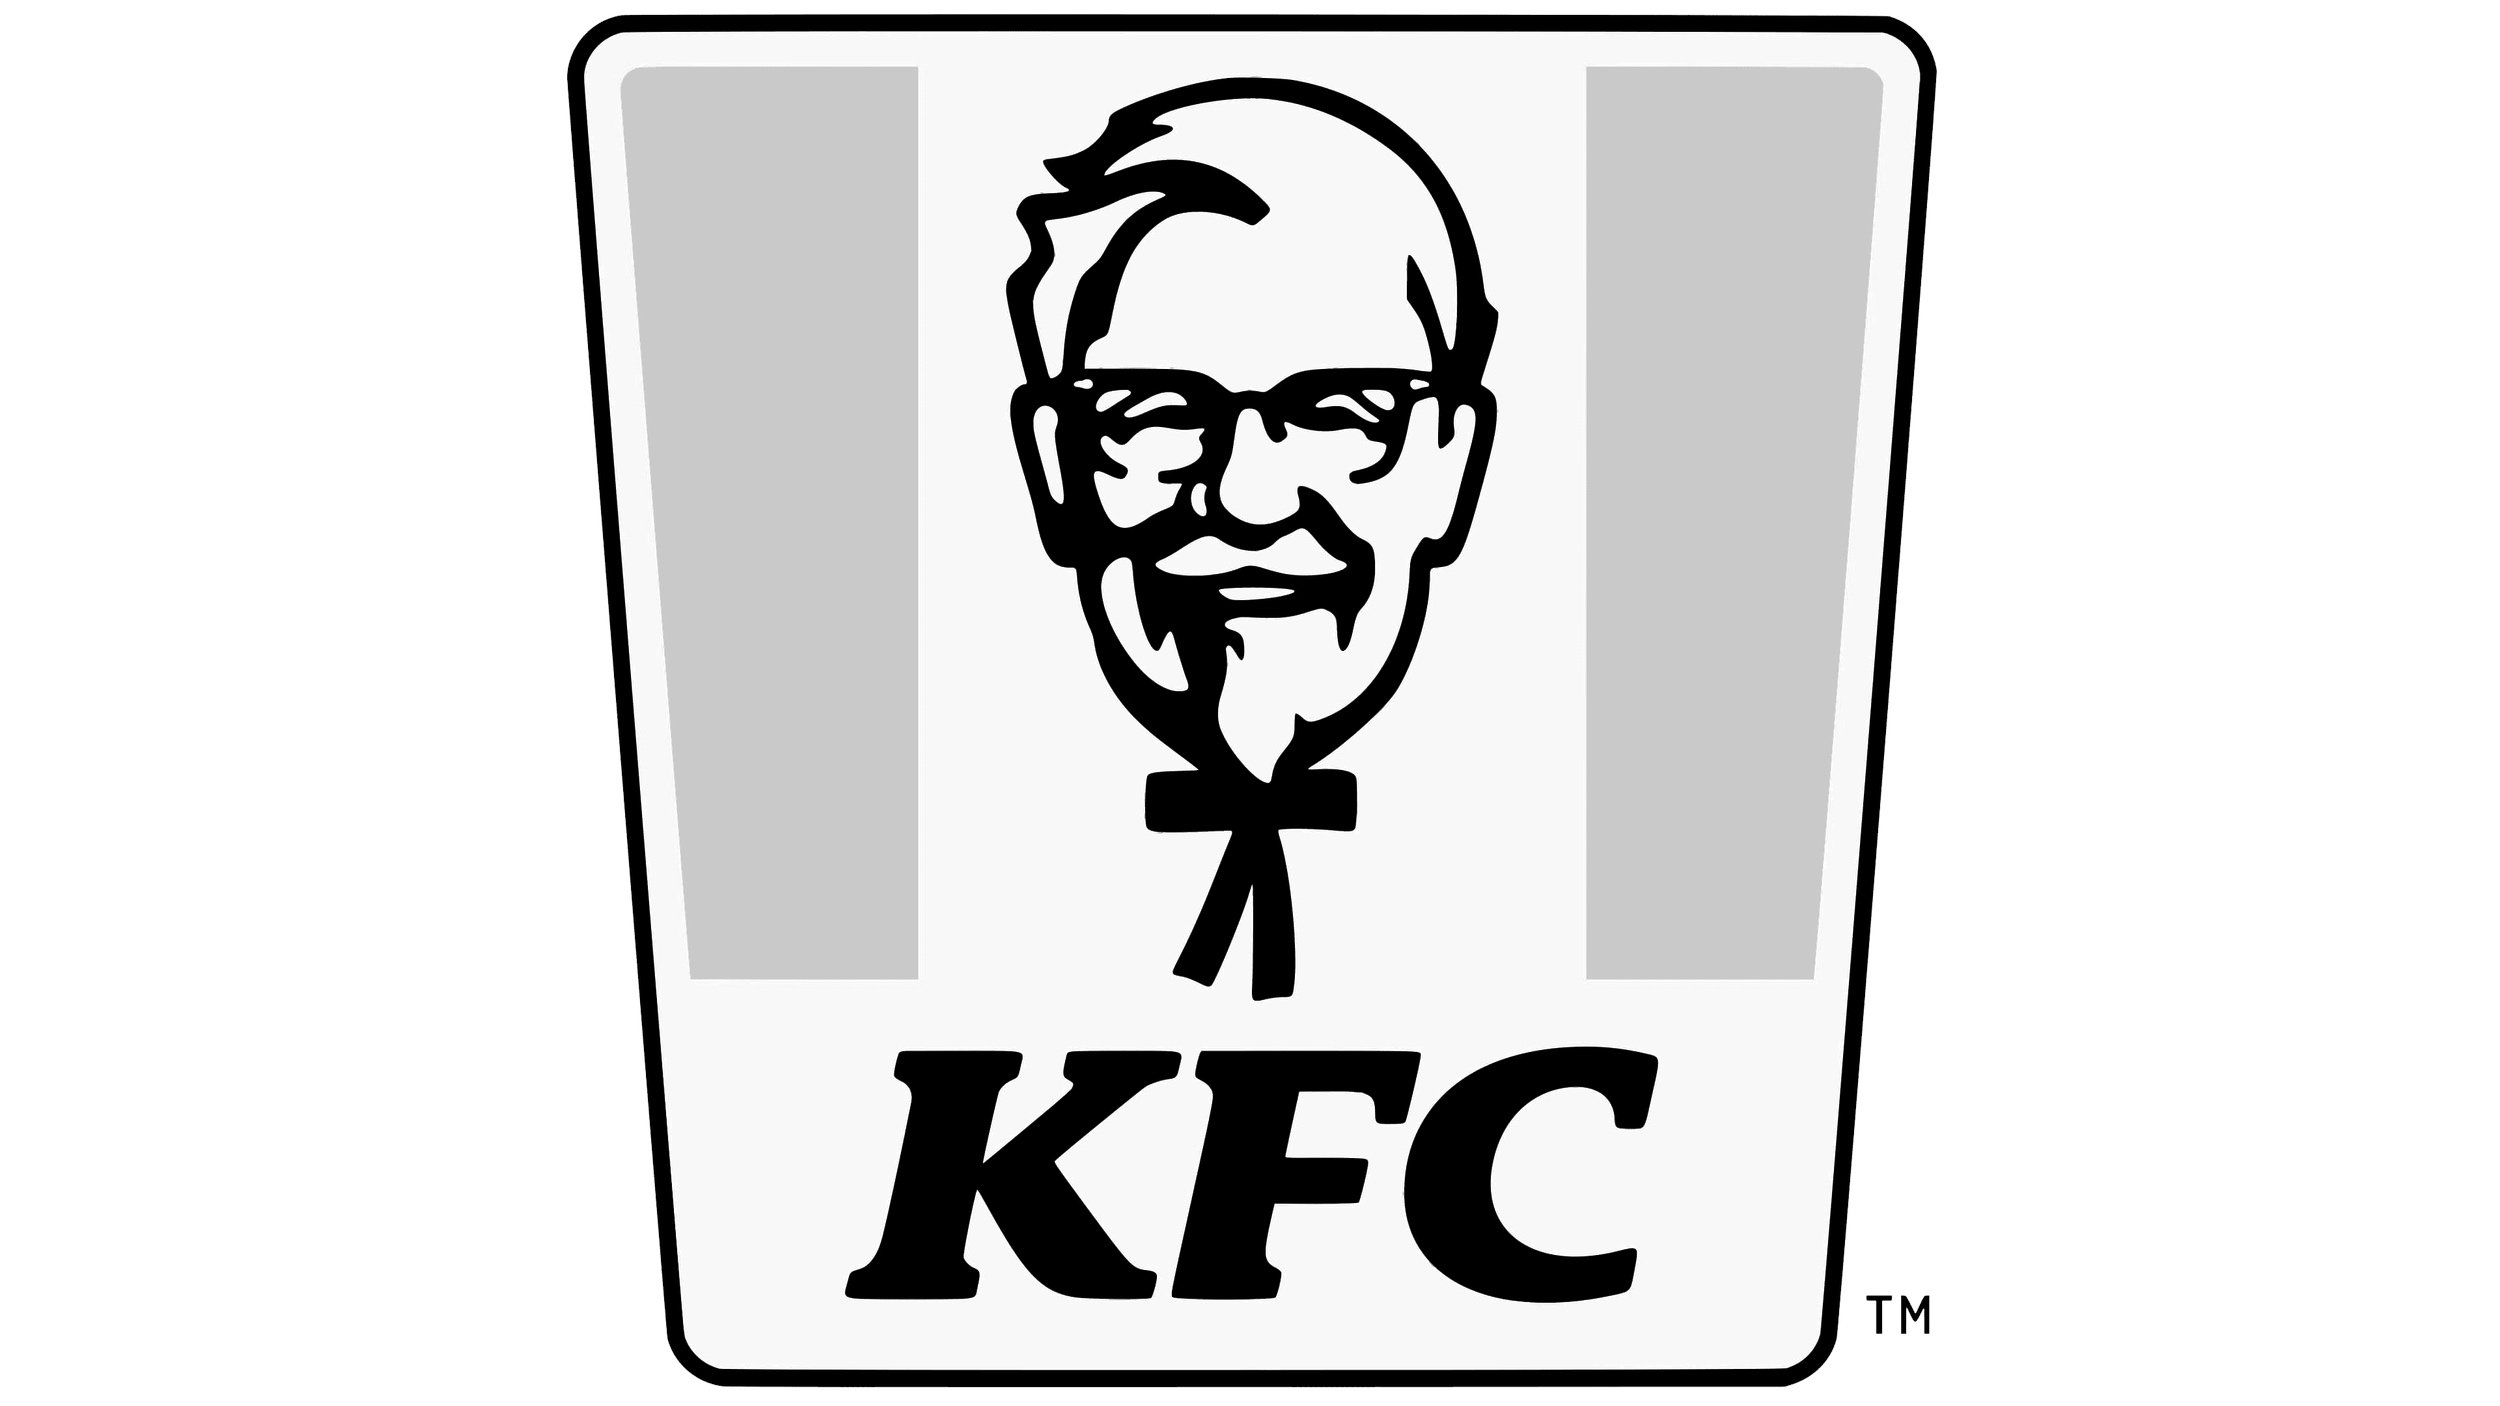 Kfc_logo.jpg